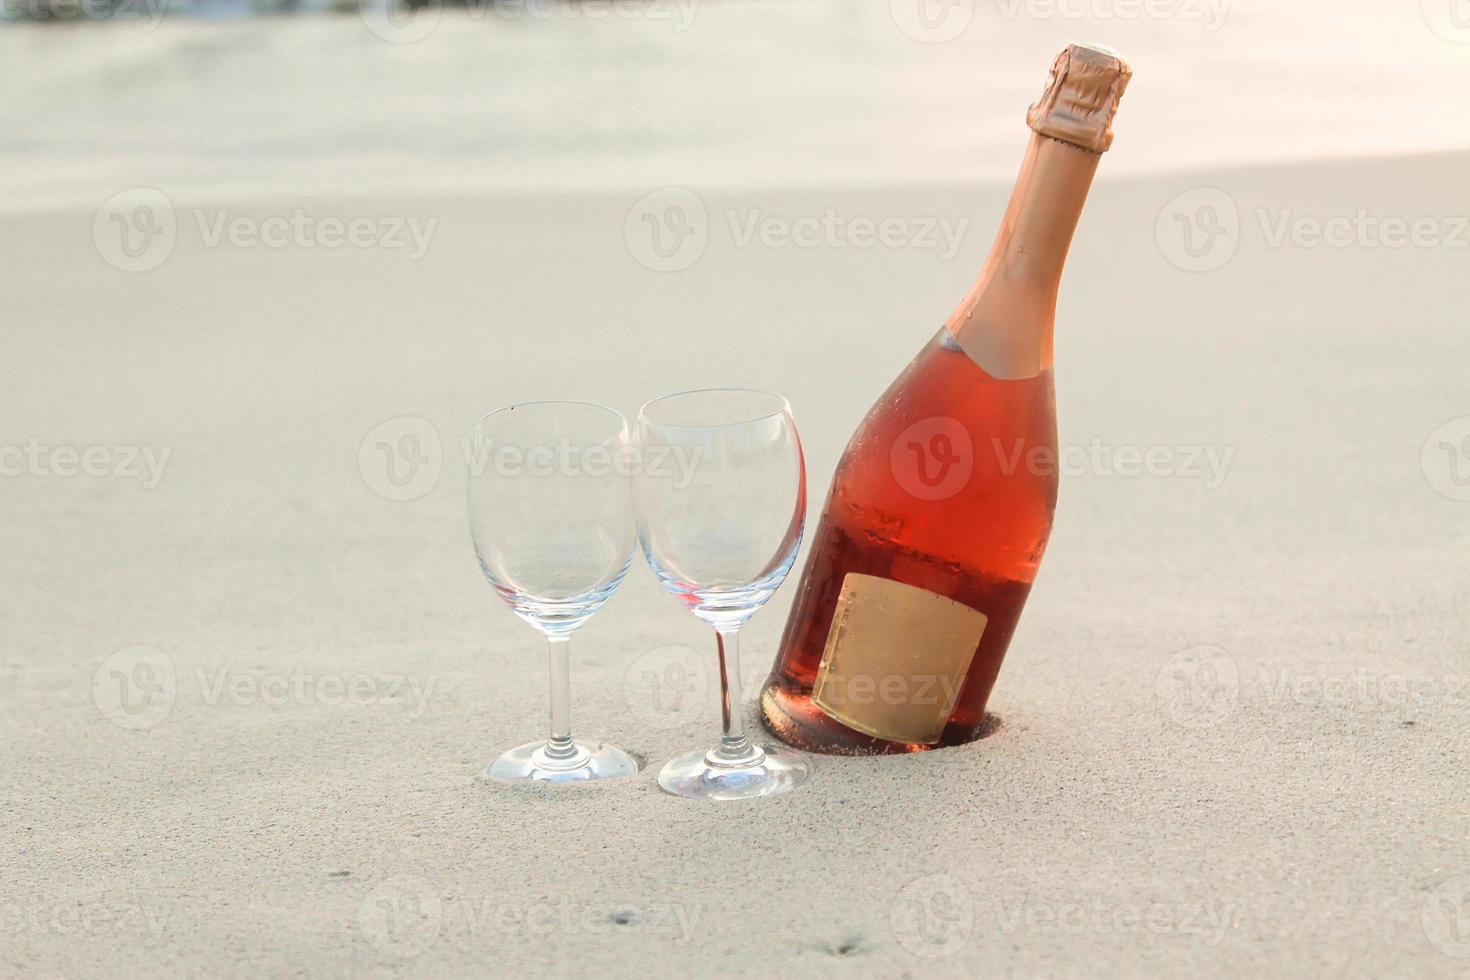 botella de vino tinto y dos copas en la playa de arena blanca foto